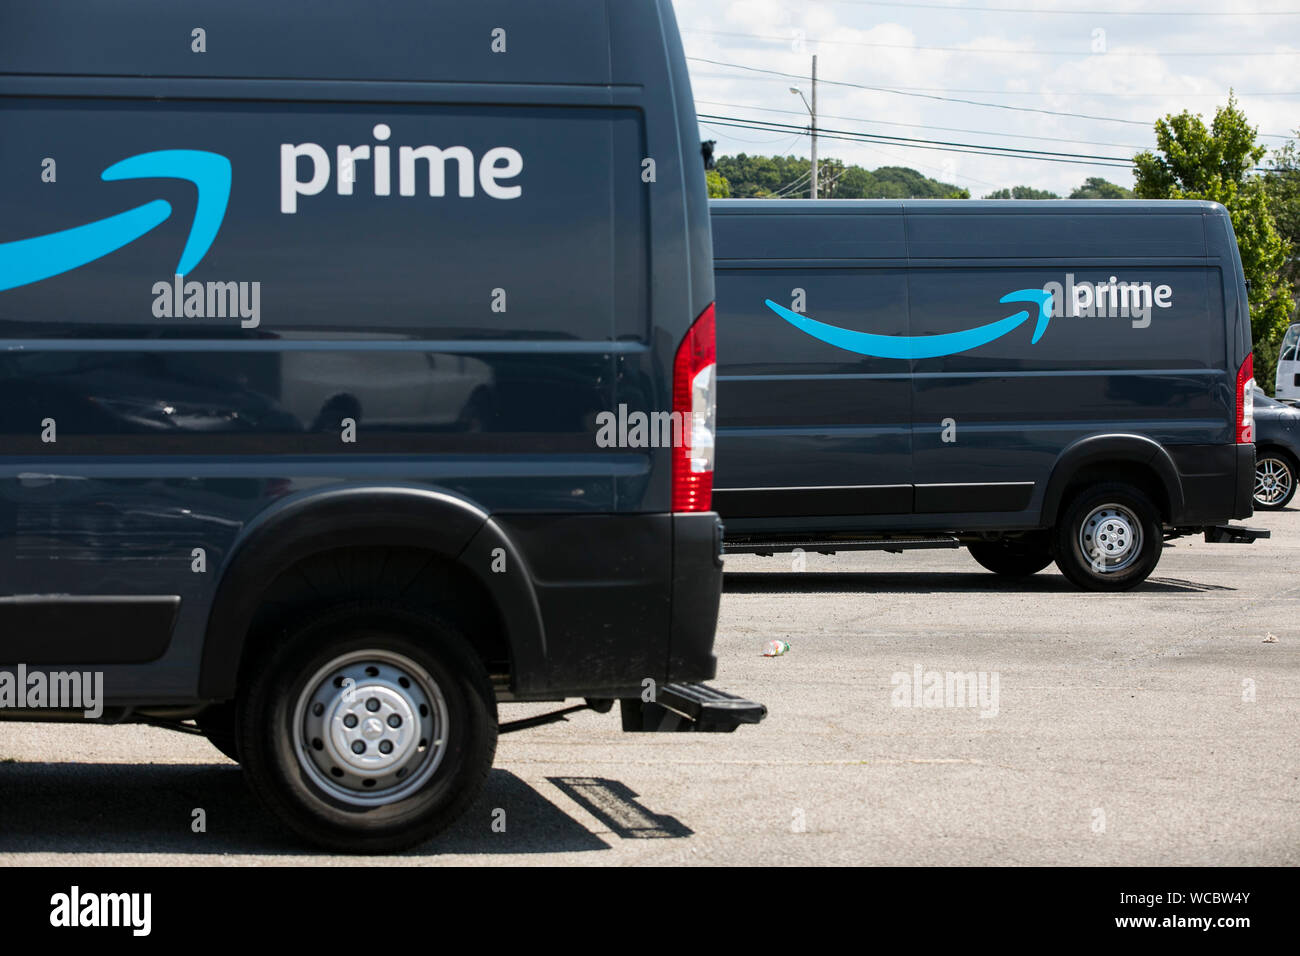 Amazon Prime Lieferung Fahrzeuge wie in Euklid, Ohio am August 11, 2019  gesehen Stockfotografie - Alamy